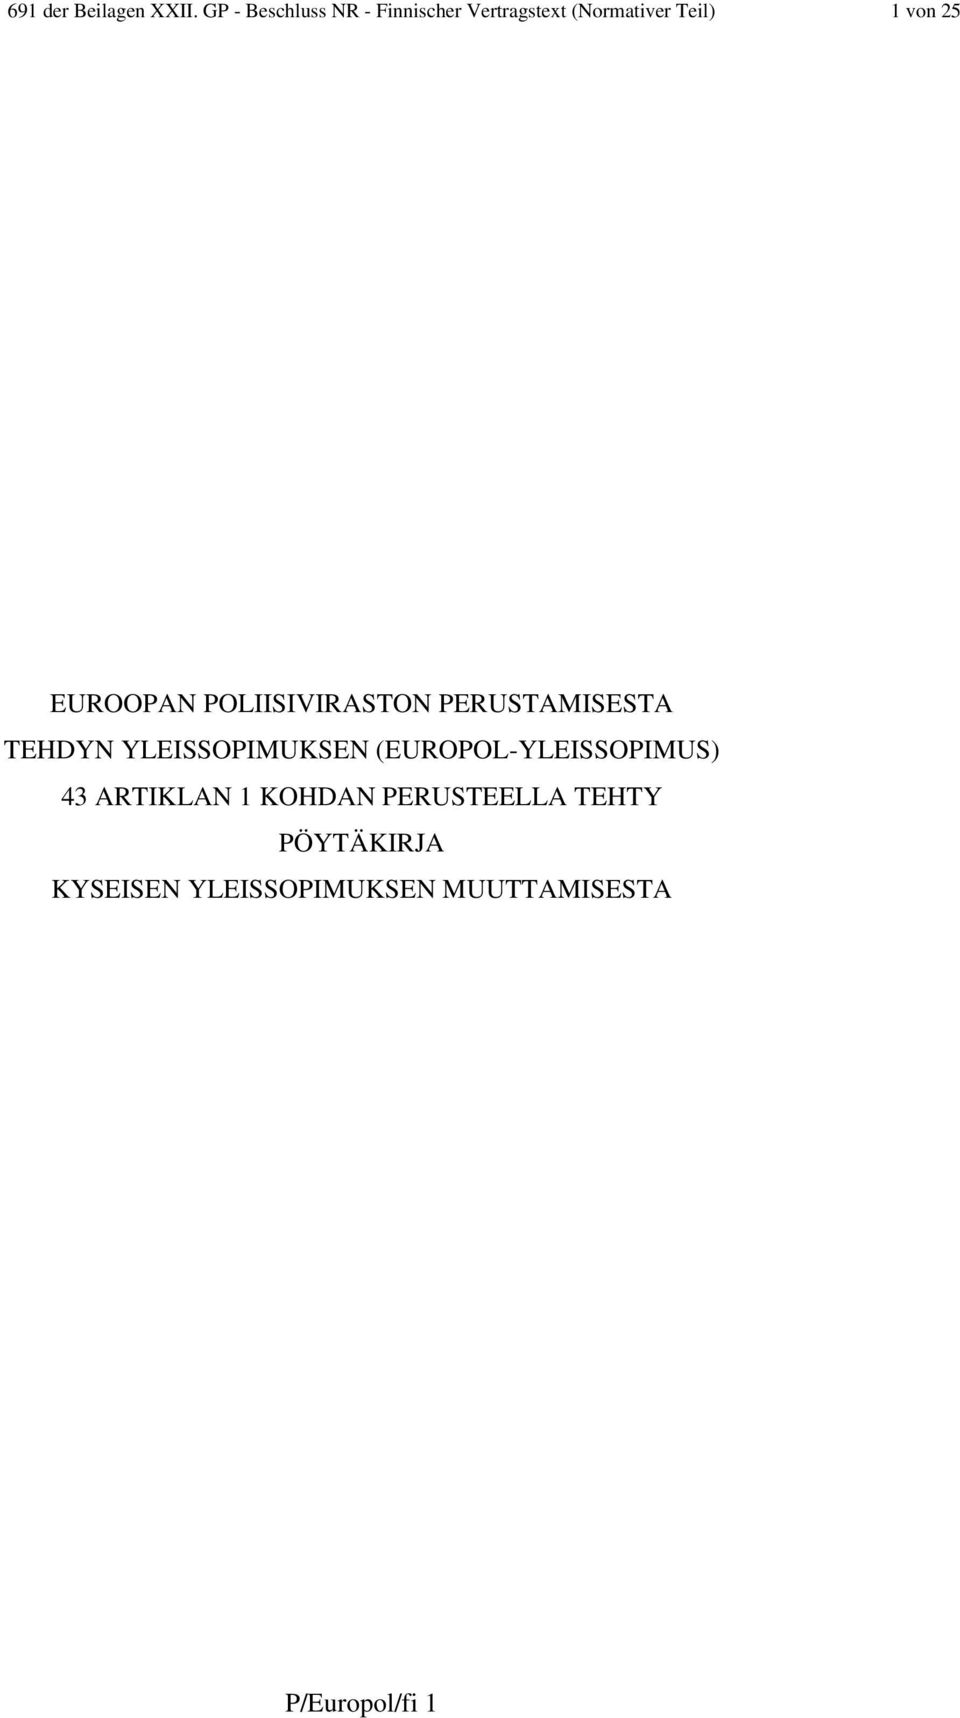 EUROOPAN POLIISIVIRASTON PERUSTAMISESTA TEHDYN YLEISSOPIMUKSEN